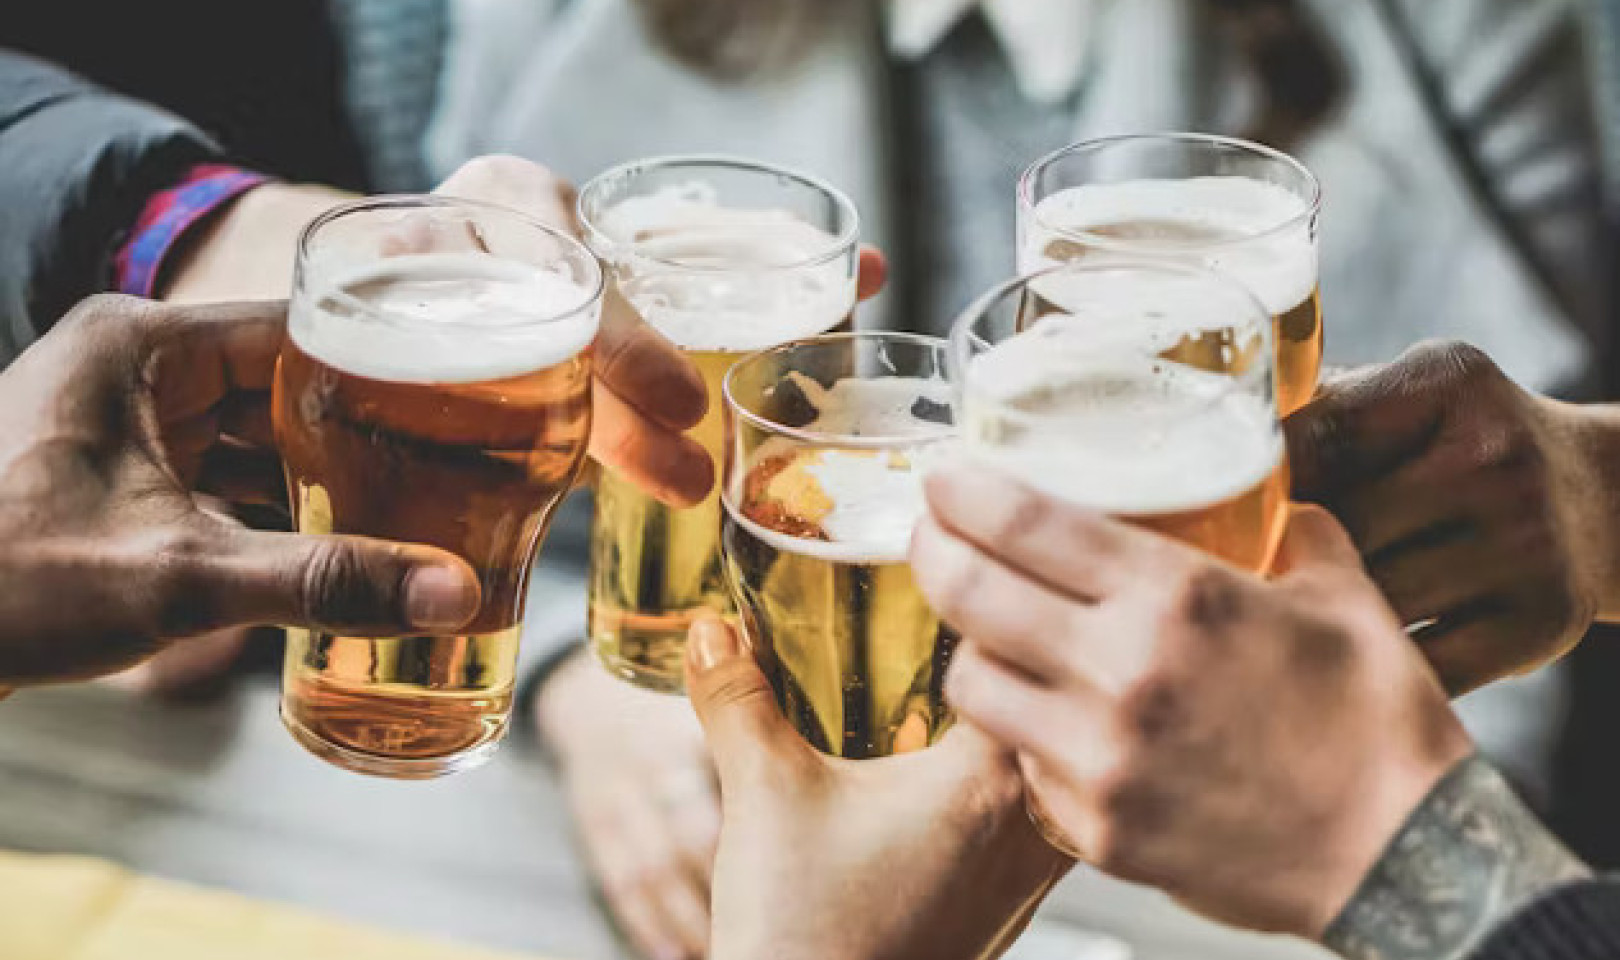 Adakah Minuman Sederhana Benarkah Menyihatkan? Membongkar Fakta